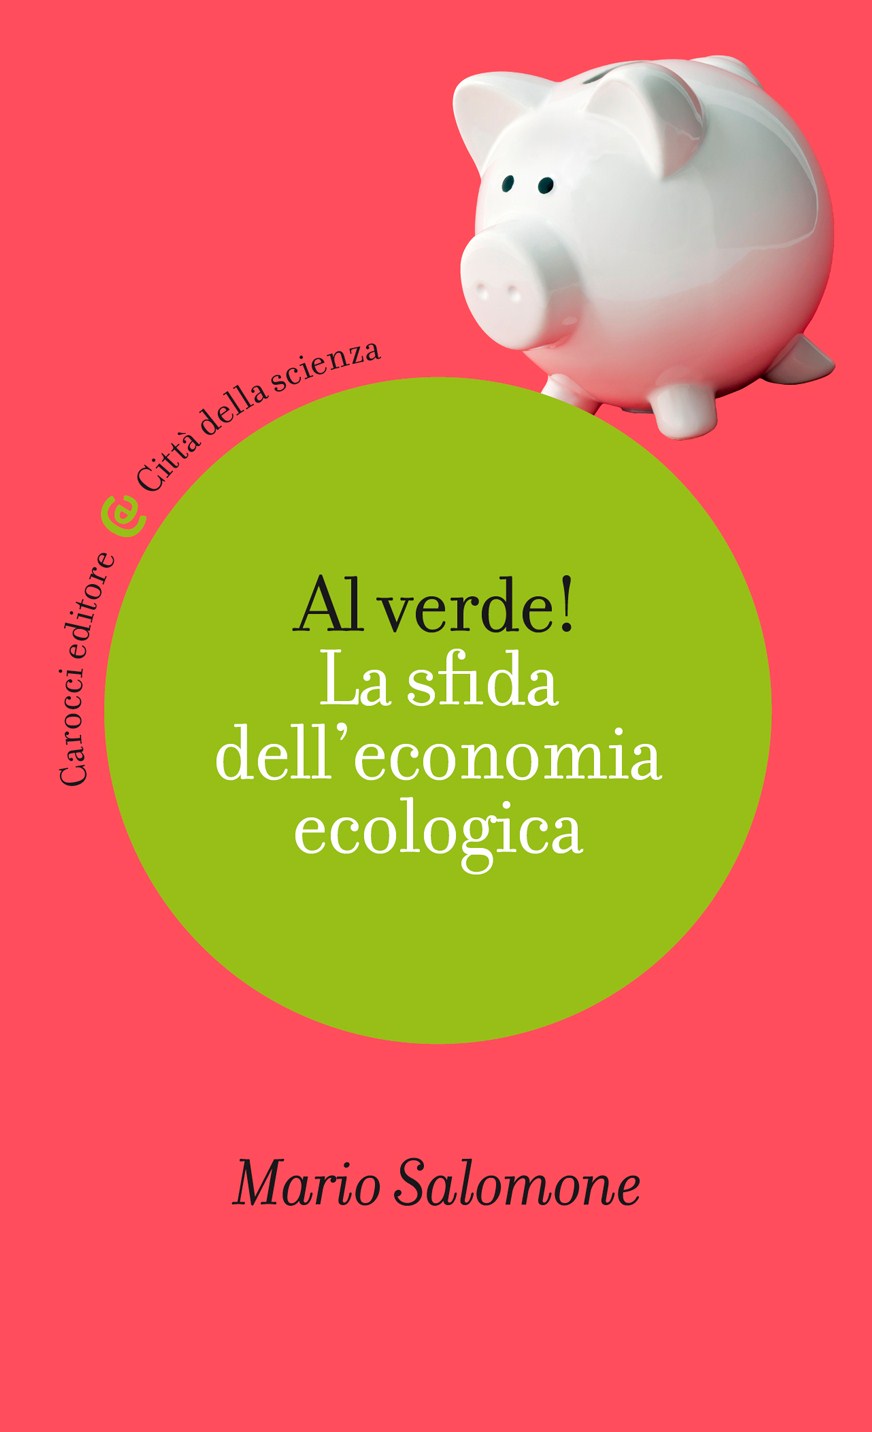 La sfida dell’economia ecologica: se ne parla lunedì 23 a Torino